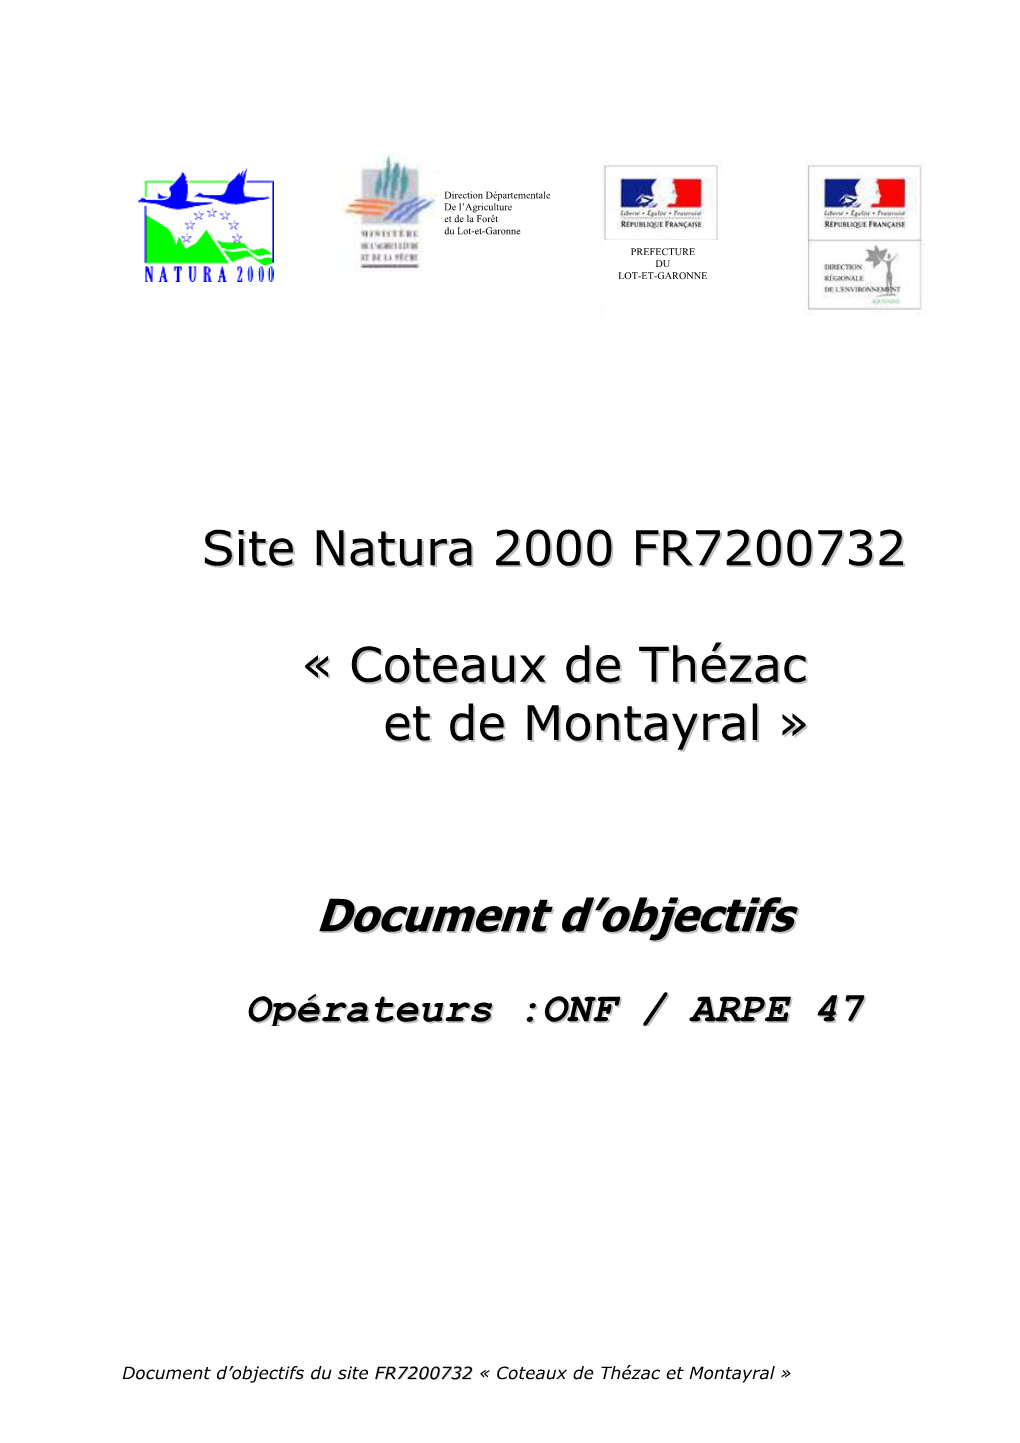 DOCOB Coteaux De Thézac Et Montayral